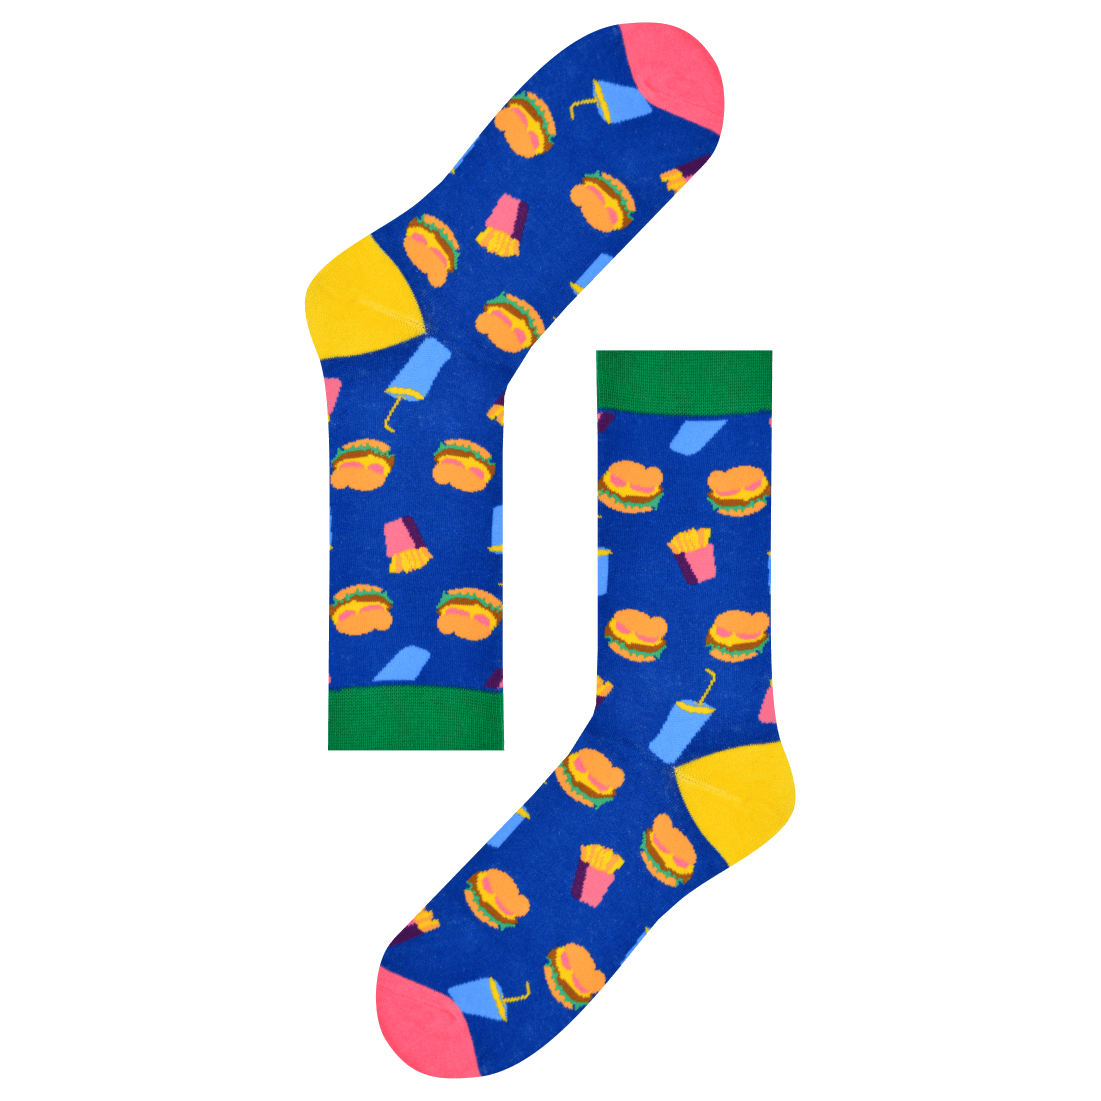 Medias Locas calcetines divertidos de diseño combo Freaky Socks